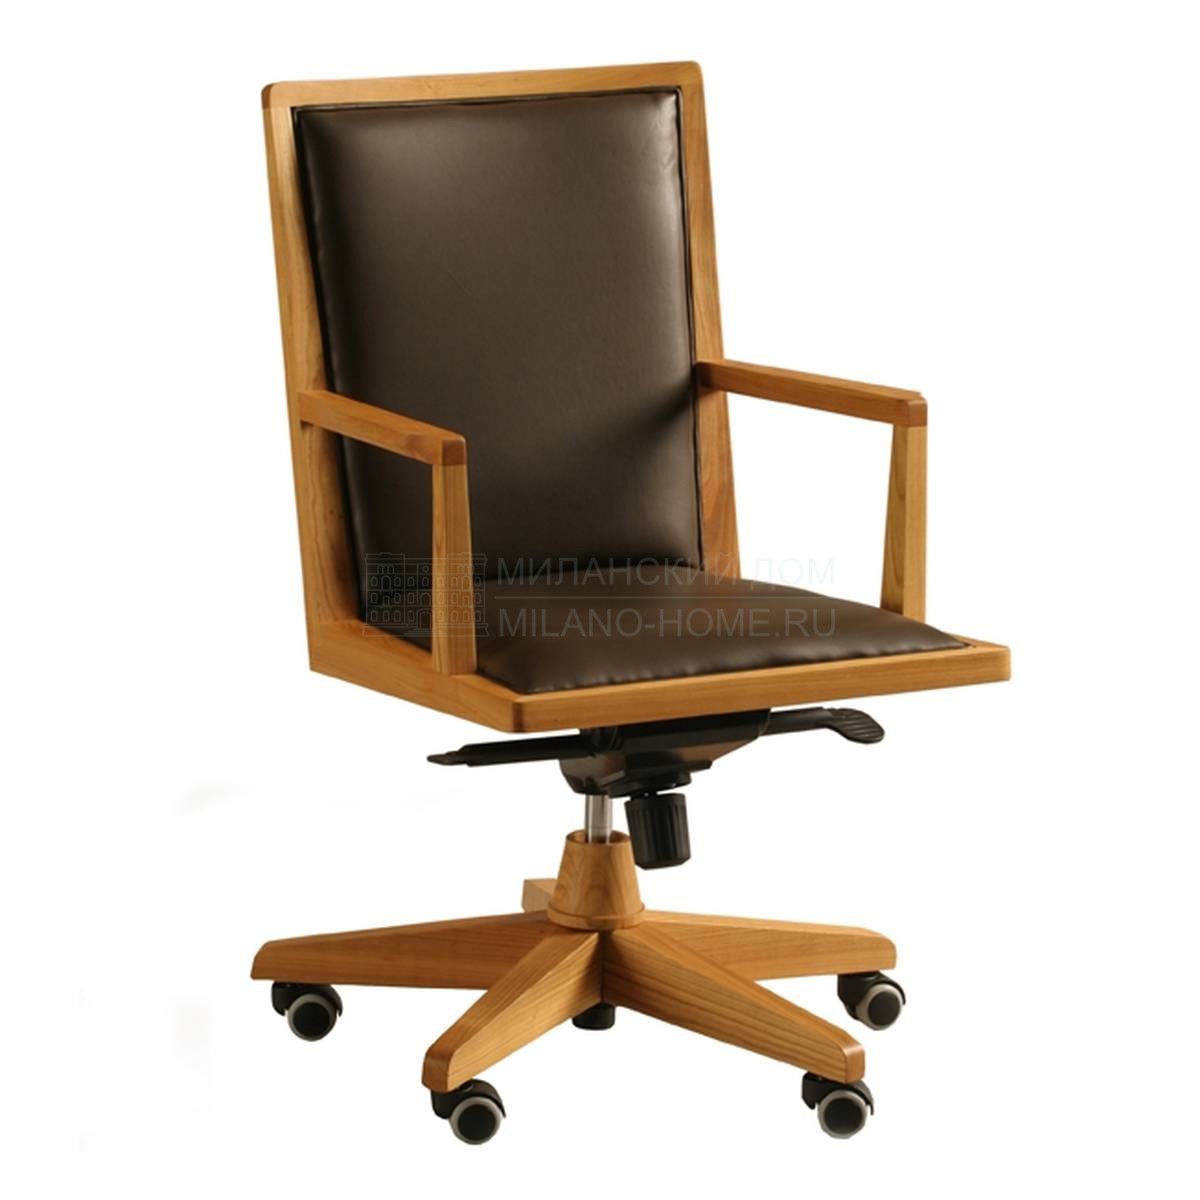 Кресло руководителя Boss / art.3888 из Италии фабрики MORELATO